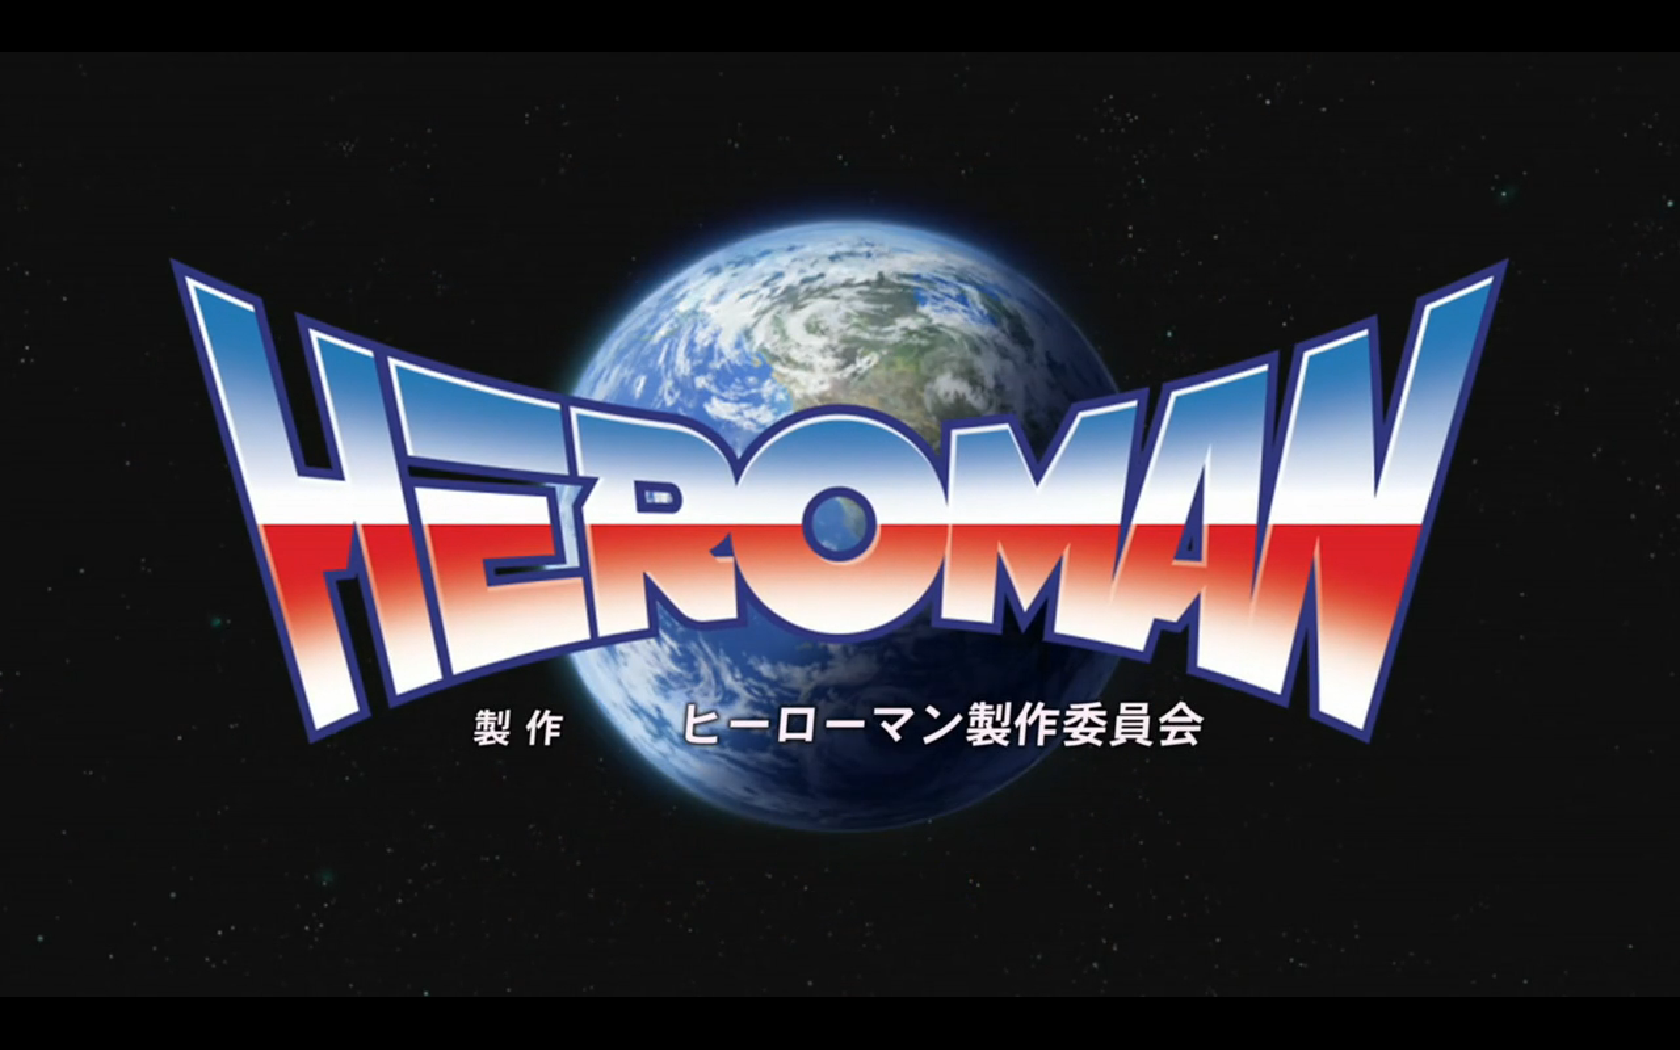 New Anime Heroman Episode 1